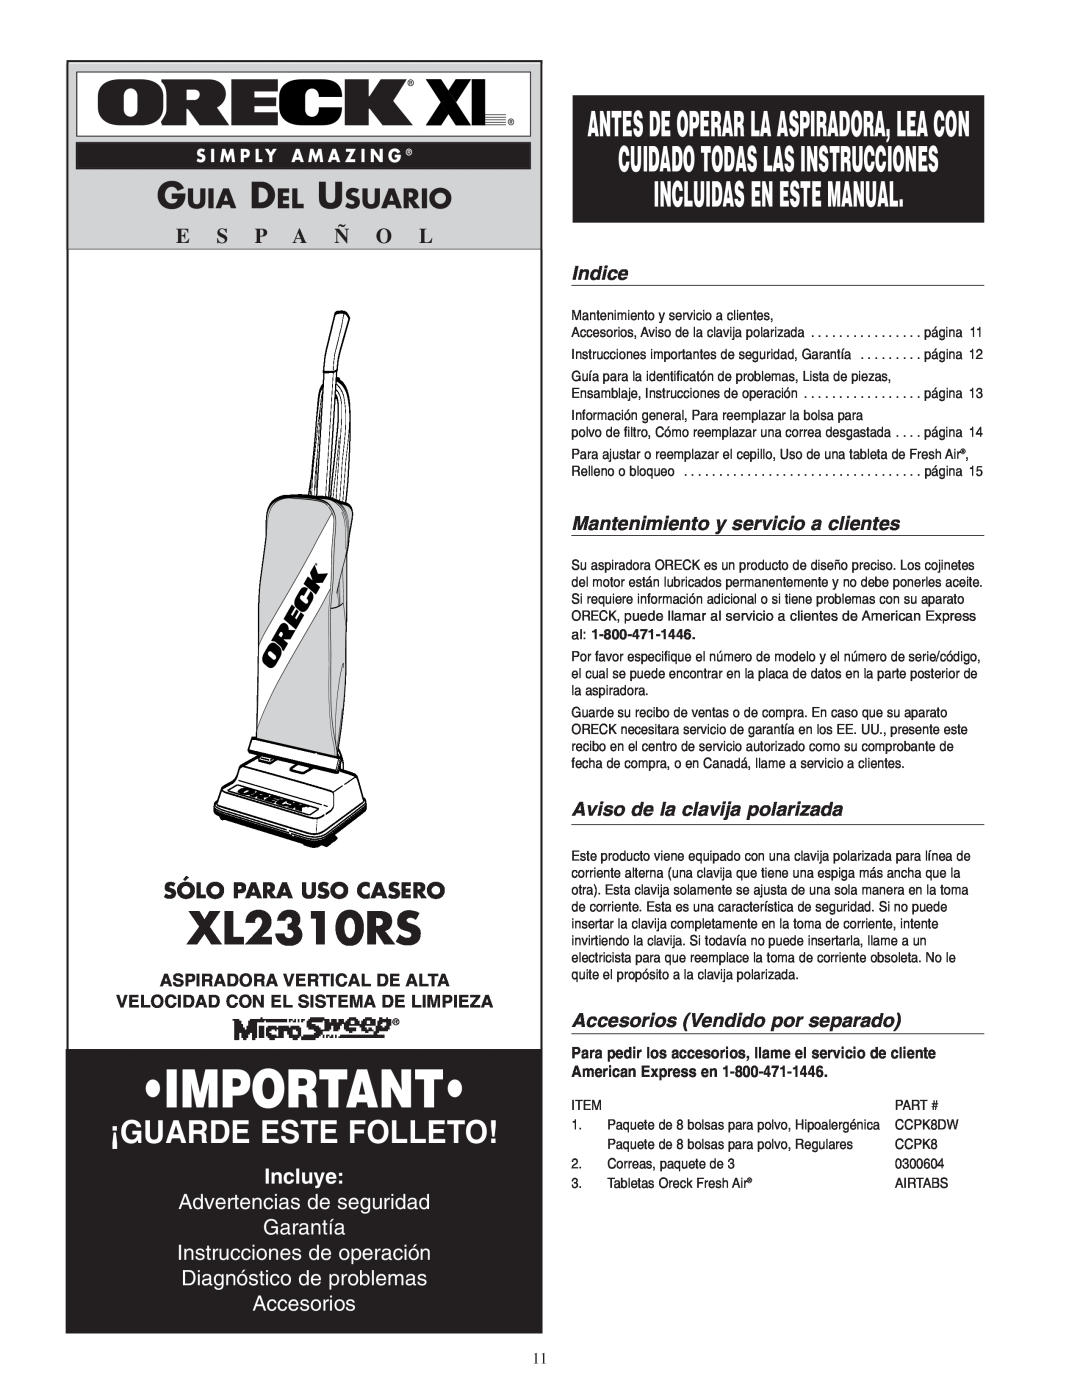 Oreck XL2310RS Incluidas En Este Manual, Guia Del Usuario, Sólo Para Uso Casero, Incluye, Instrucciones de operación 